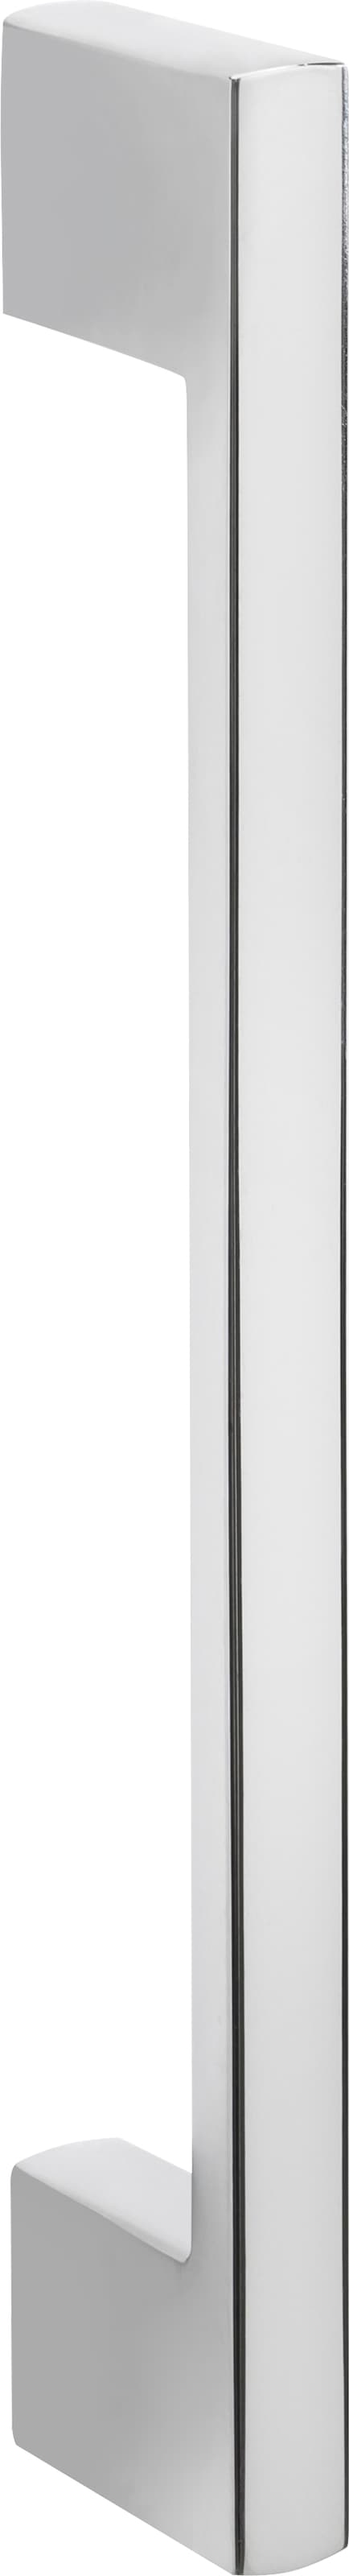 HELD MÖBEL Kühlumbauschrank »Colmar«, 60 cm breit, 165 cm hoch, geeignet für Einbaukühlschrank 88 cm Nische